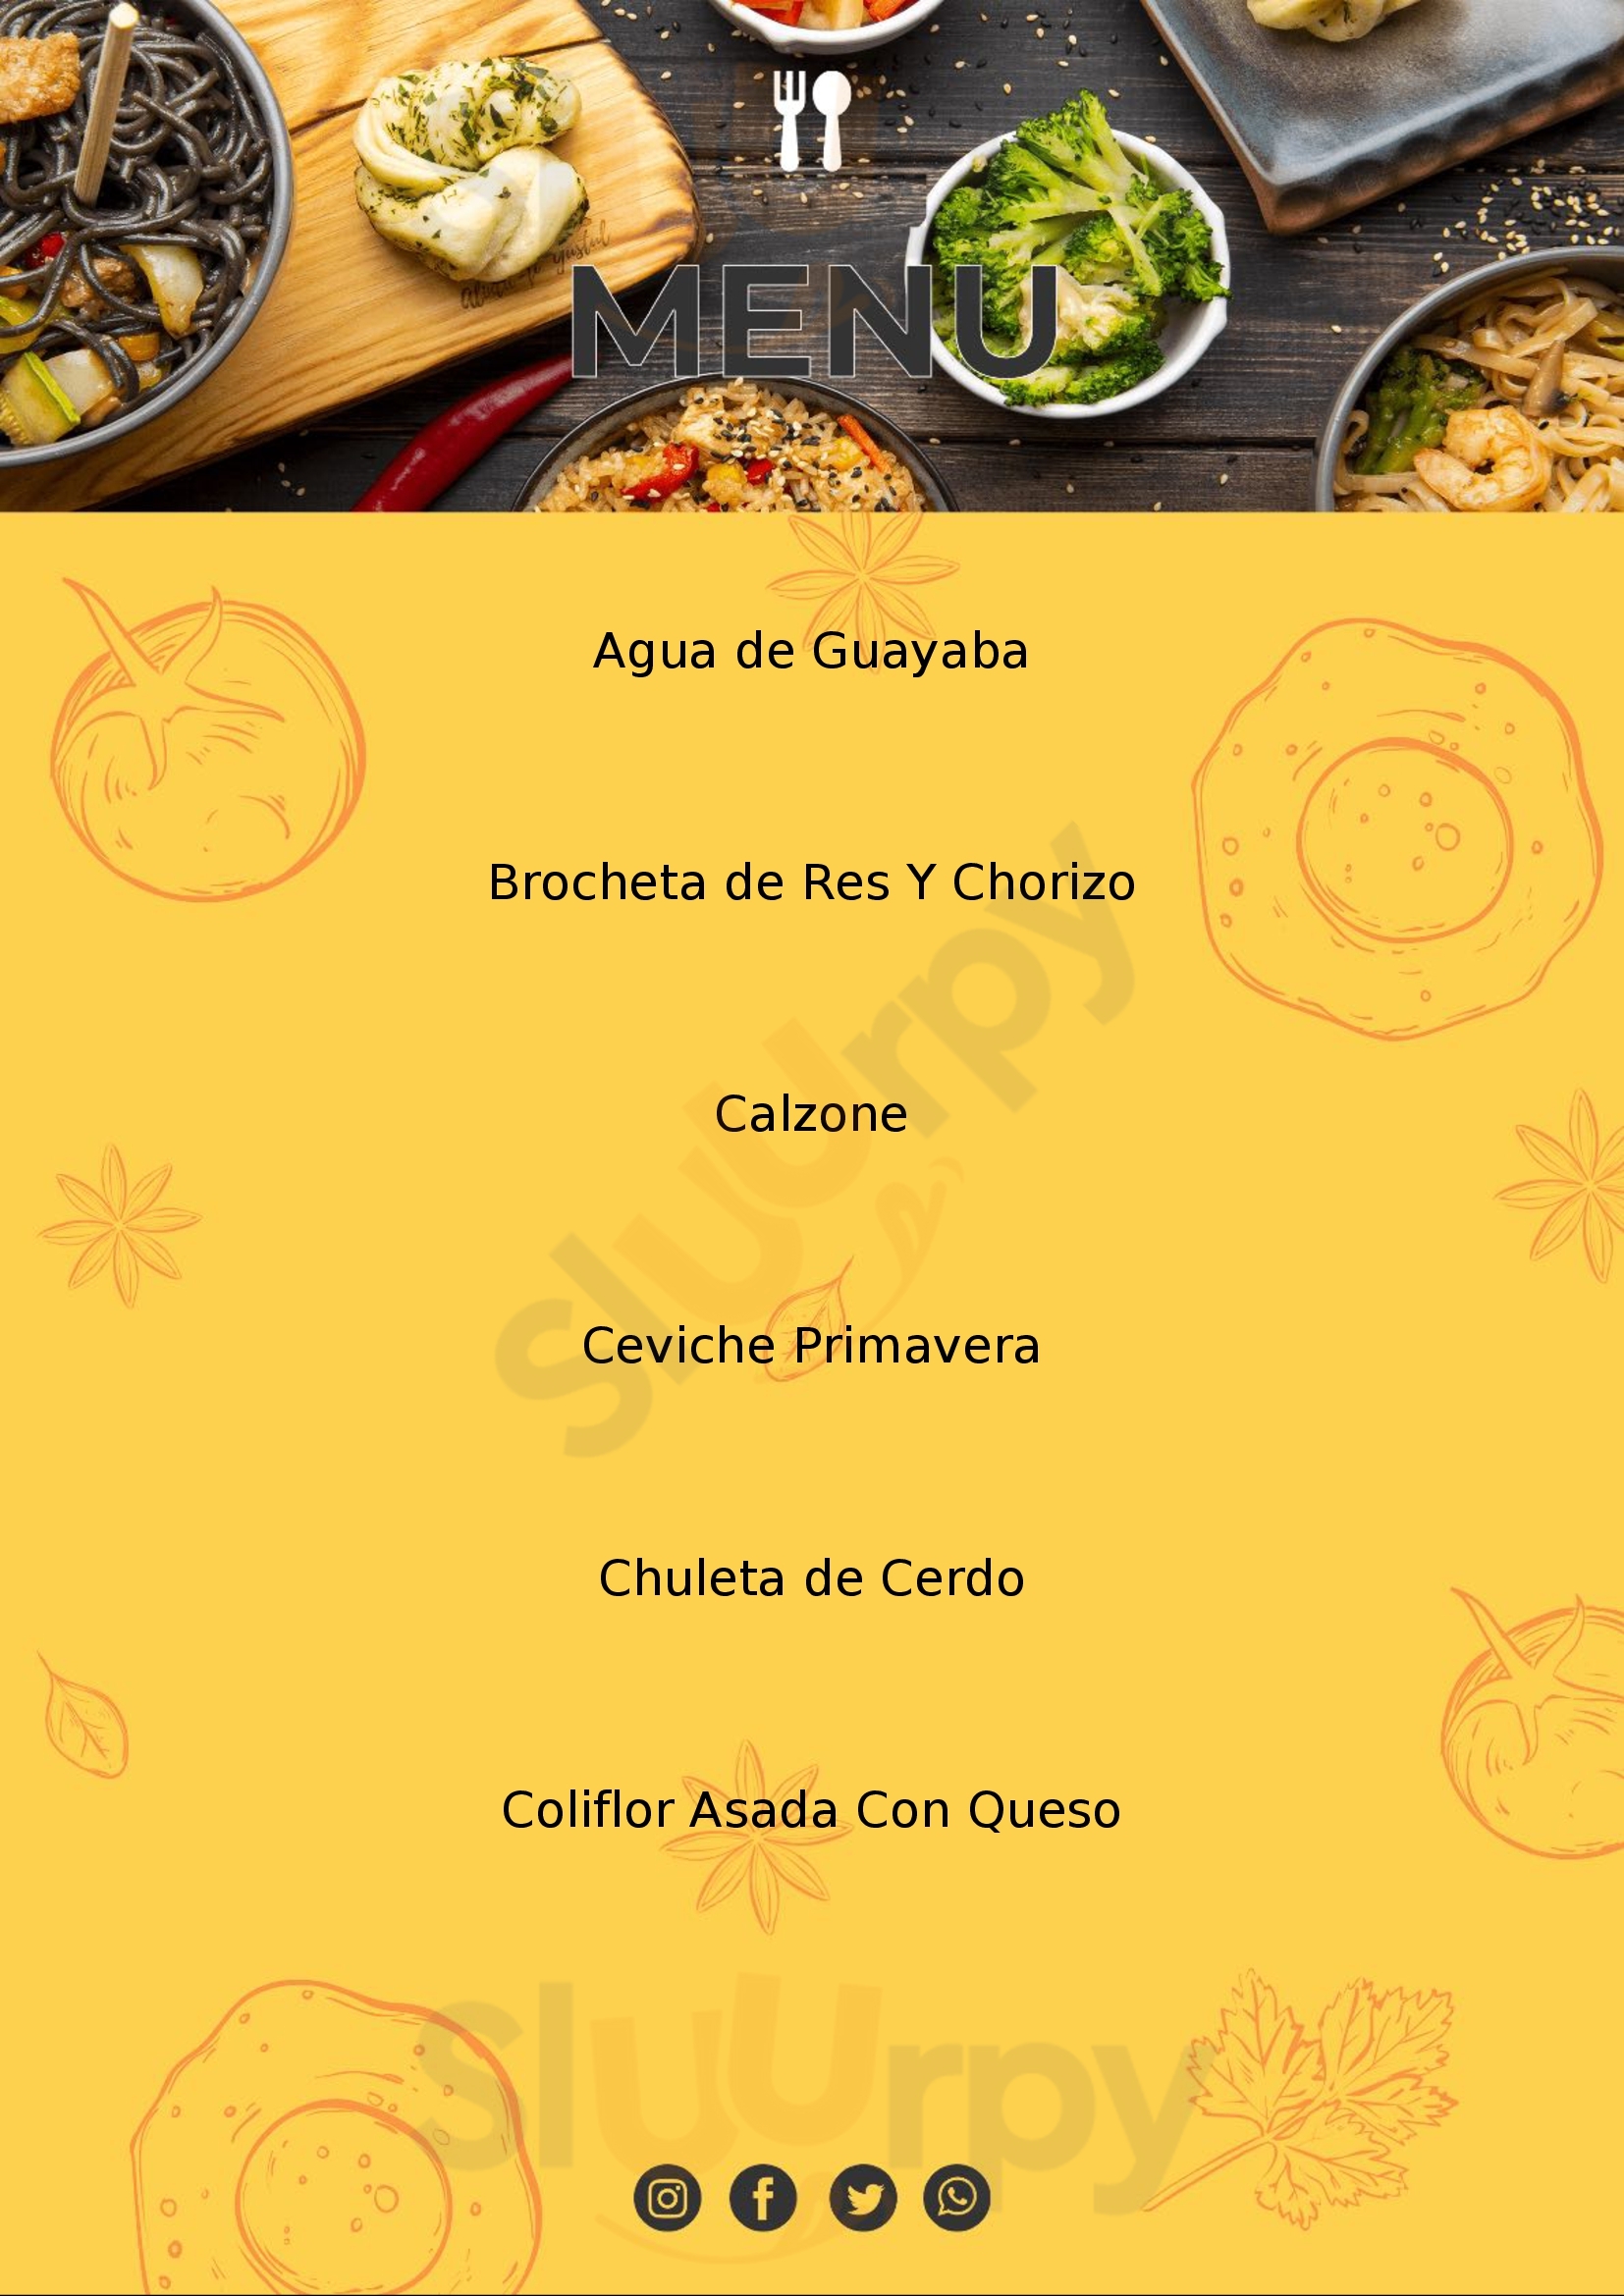 Cien Fuegos Pizza & Comfort Food San Miguel de Allende Menu - 1